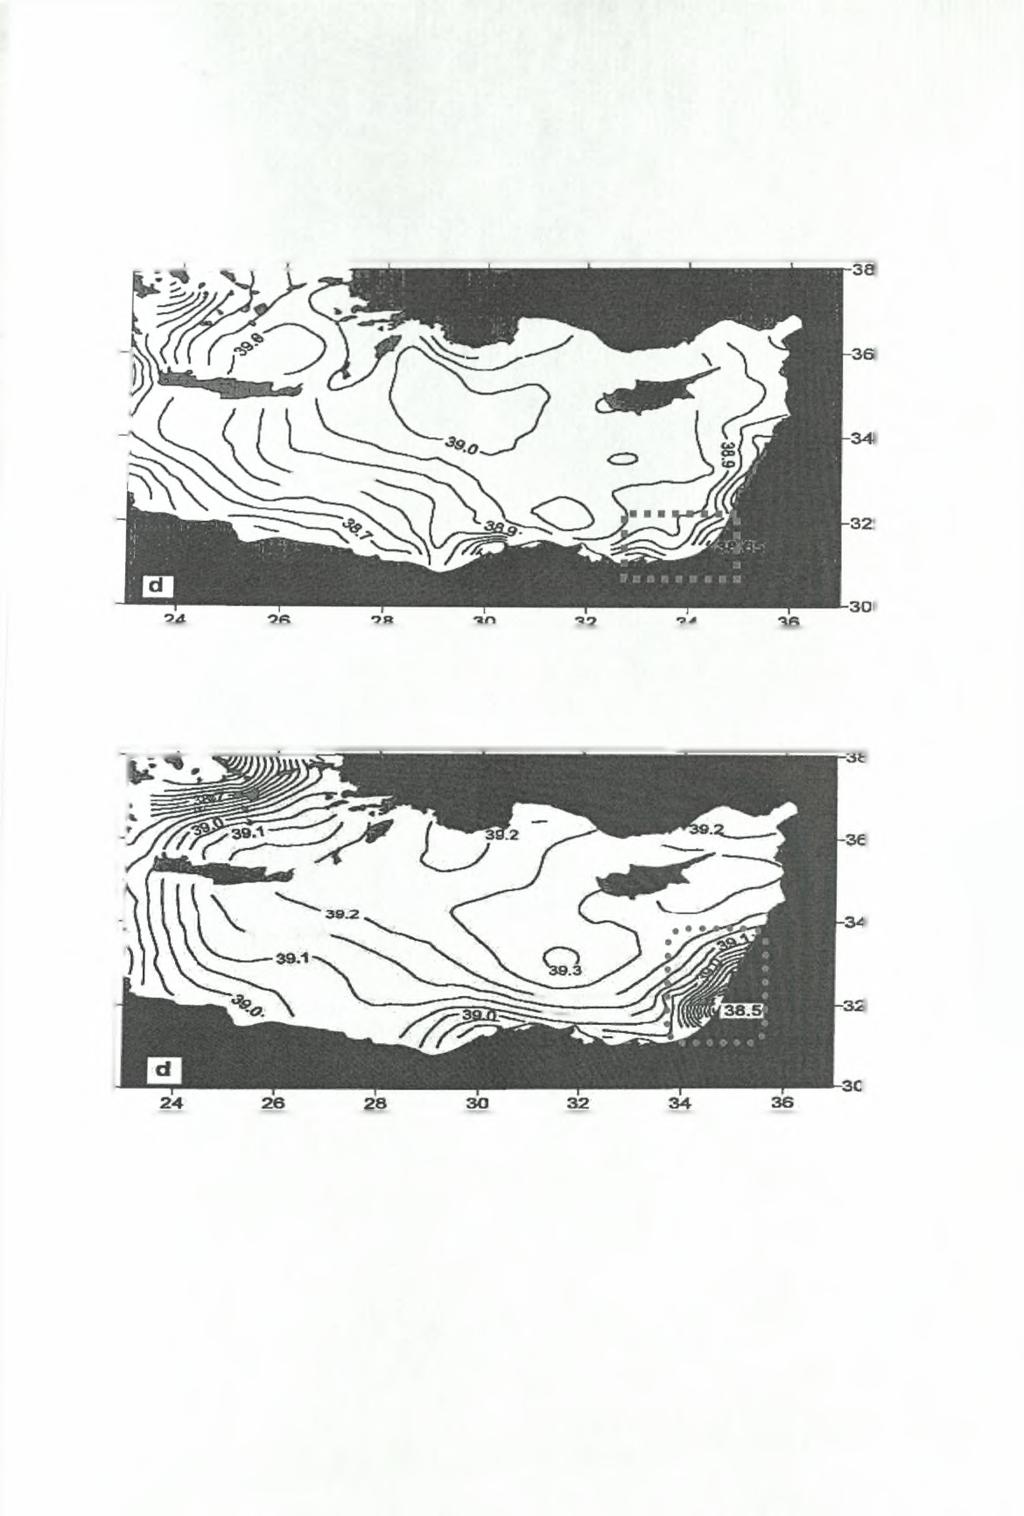 Kew0j.aio 3 -GOIN - (1987-1990) -90- Ωστόσο, την περιοχή Νότια της Κύπρου την κάλυψε μόνο το ερευνητικό πρόγραμμα POEM.